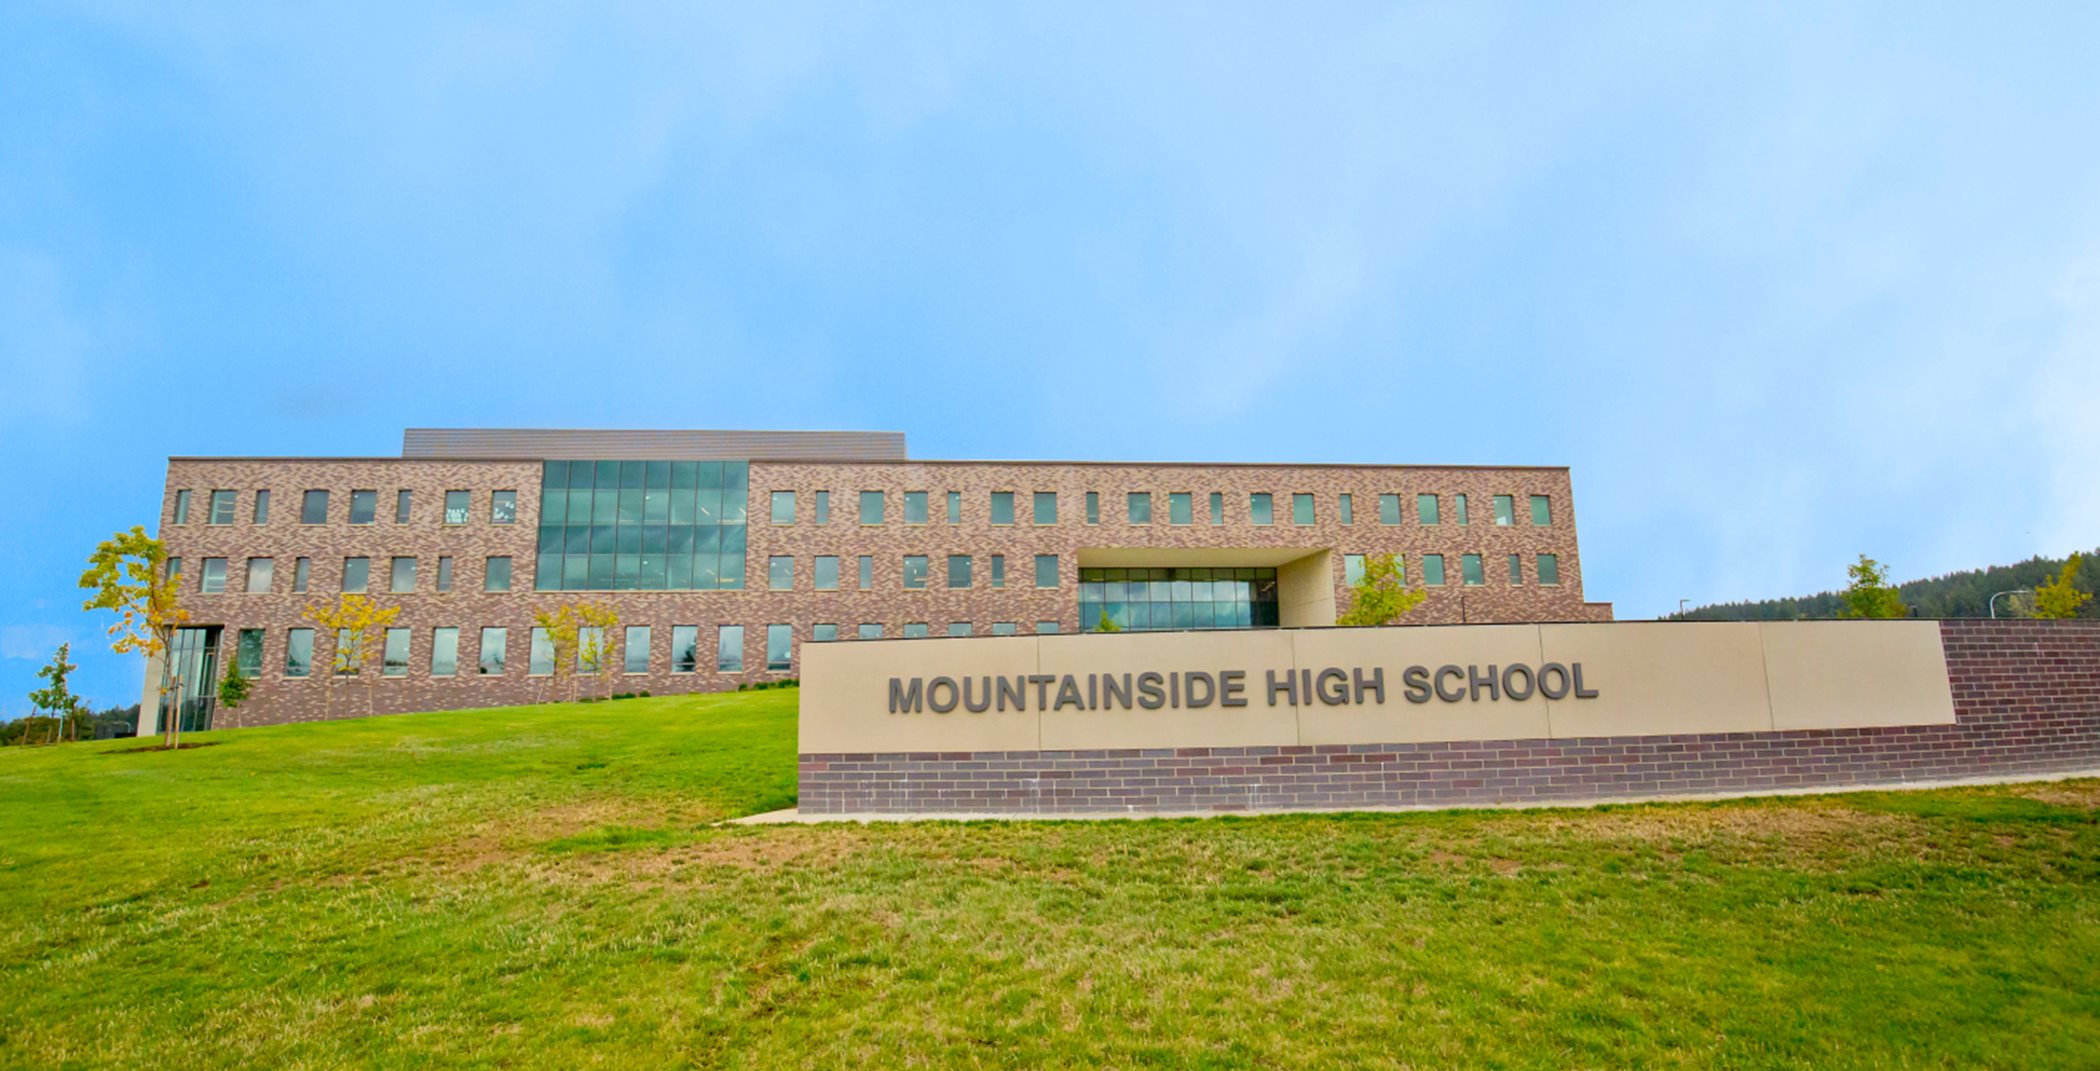 Mountainside high school